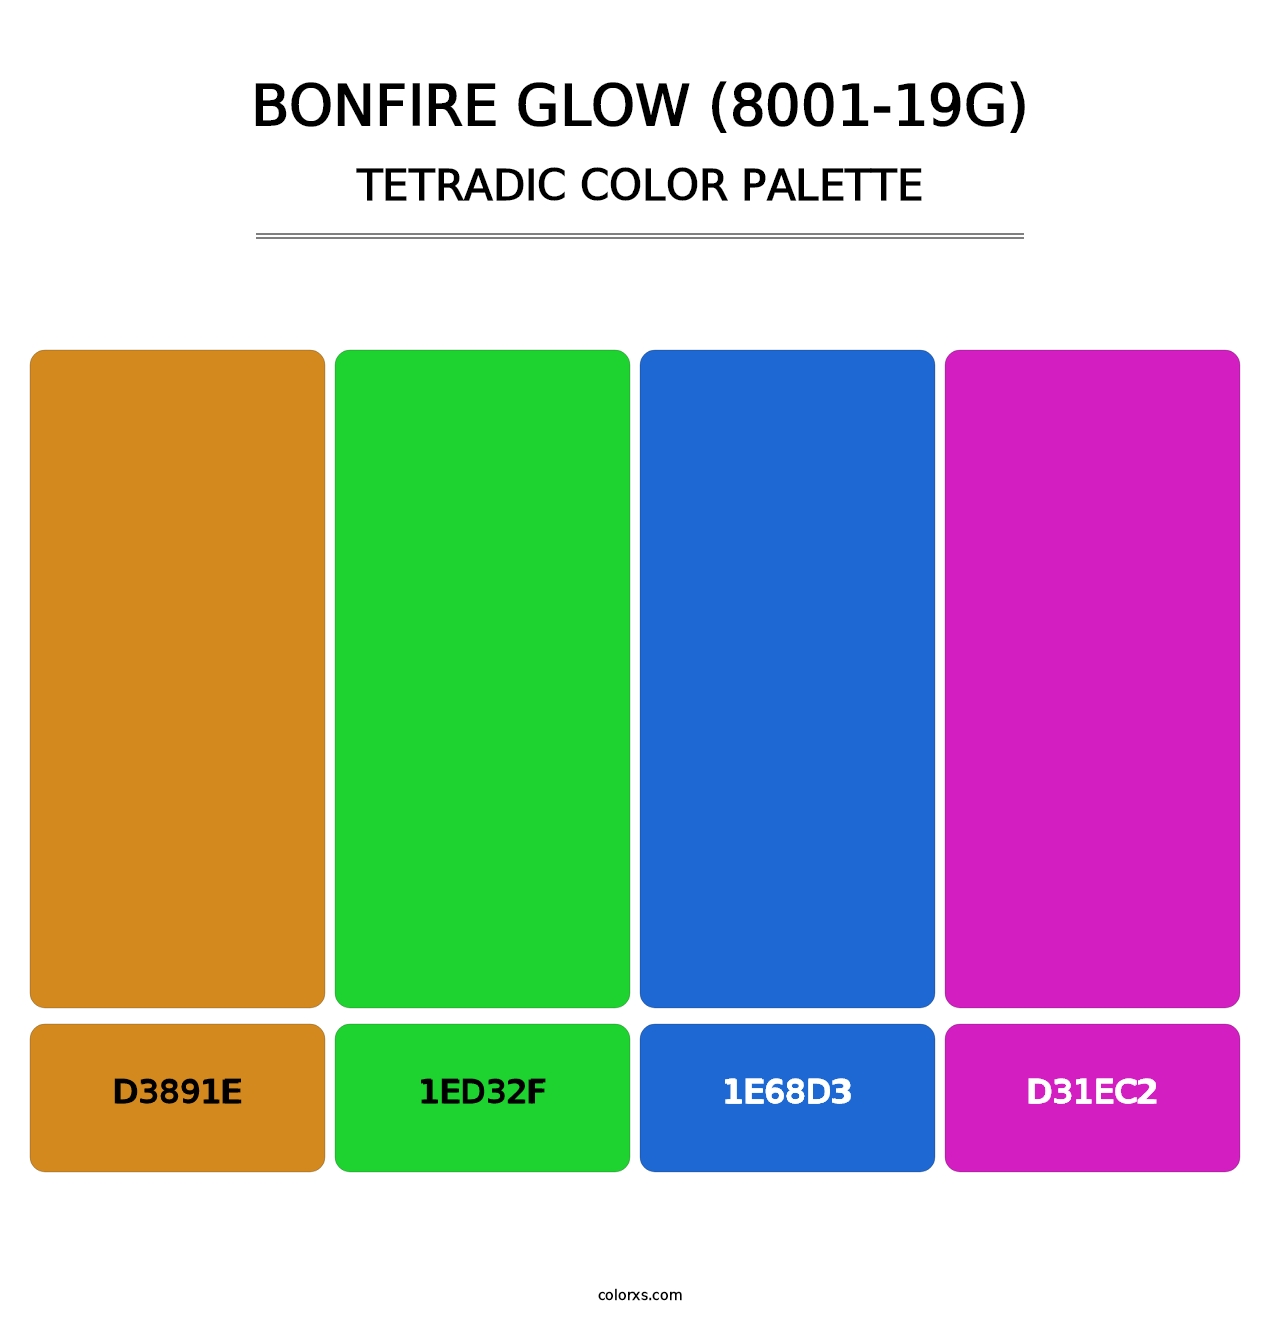 Bonfire Glow (8001-19G) - Tetradic Color Palette